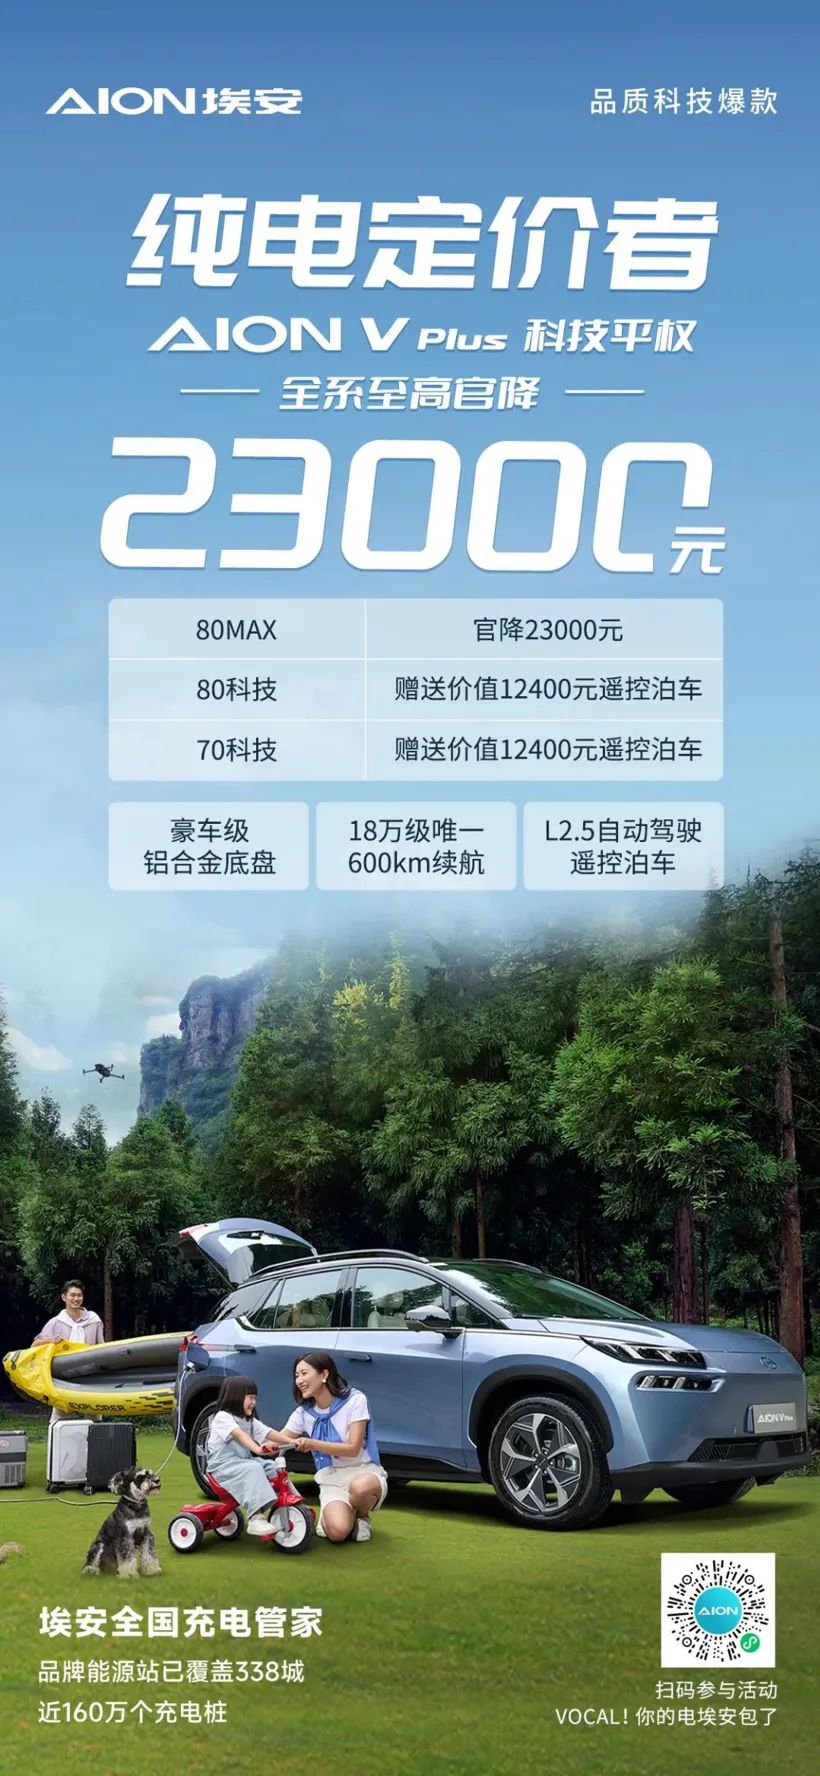 ყველა GAC Aion V Plus სერიის ფასია 23,000 RMB უმაღლესი ოფიციალური ფასისთვის